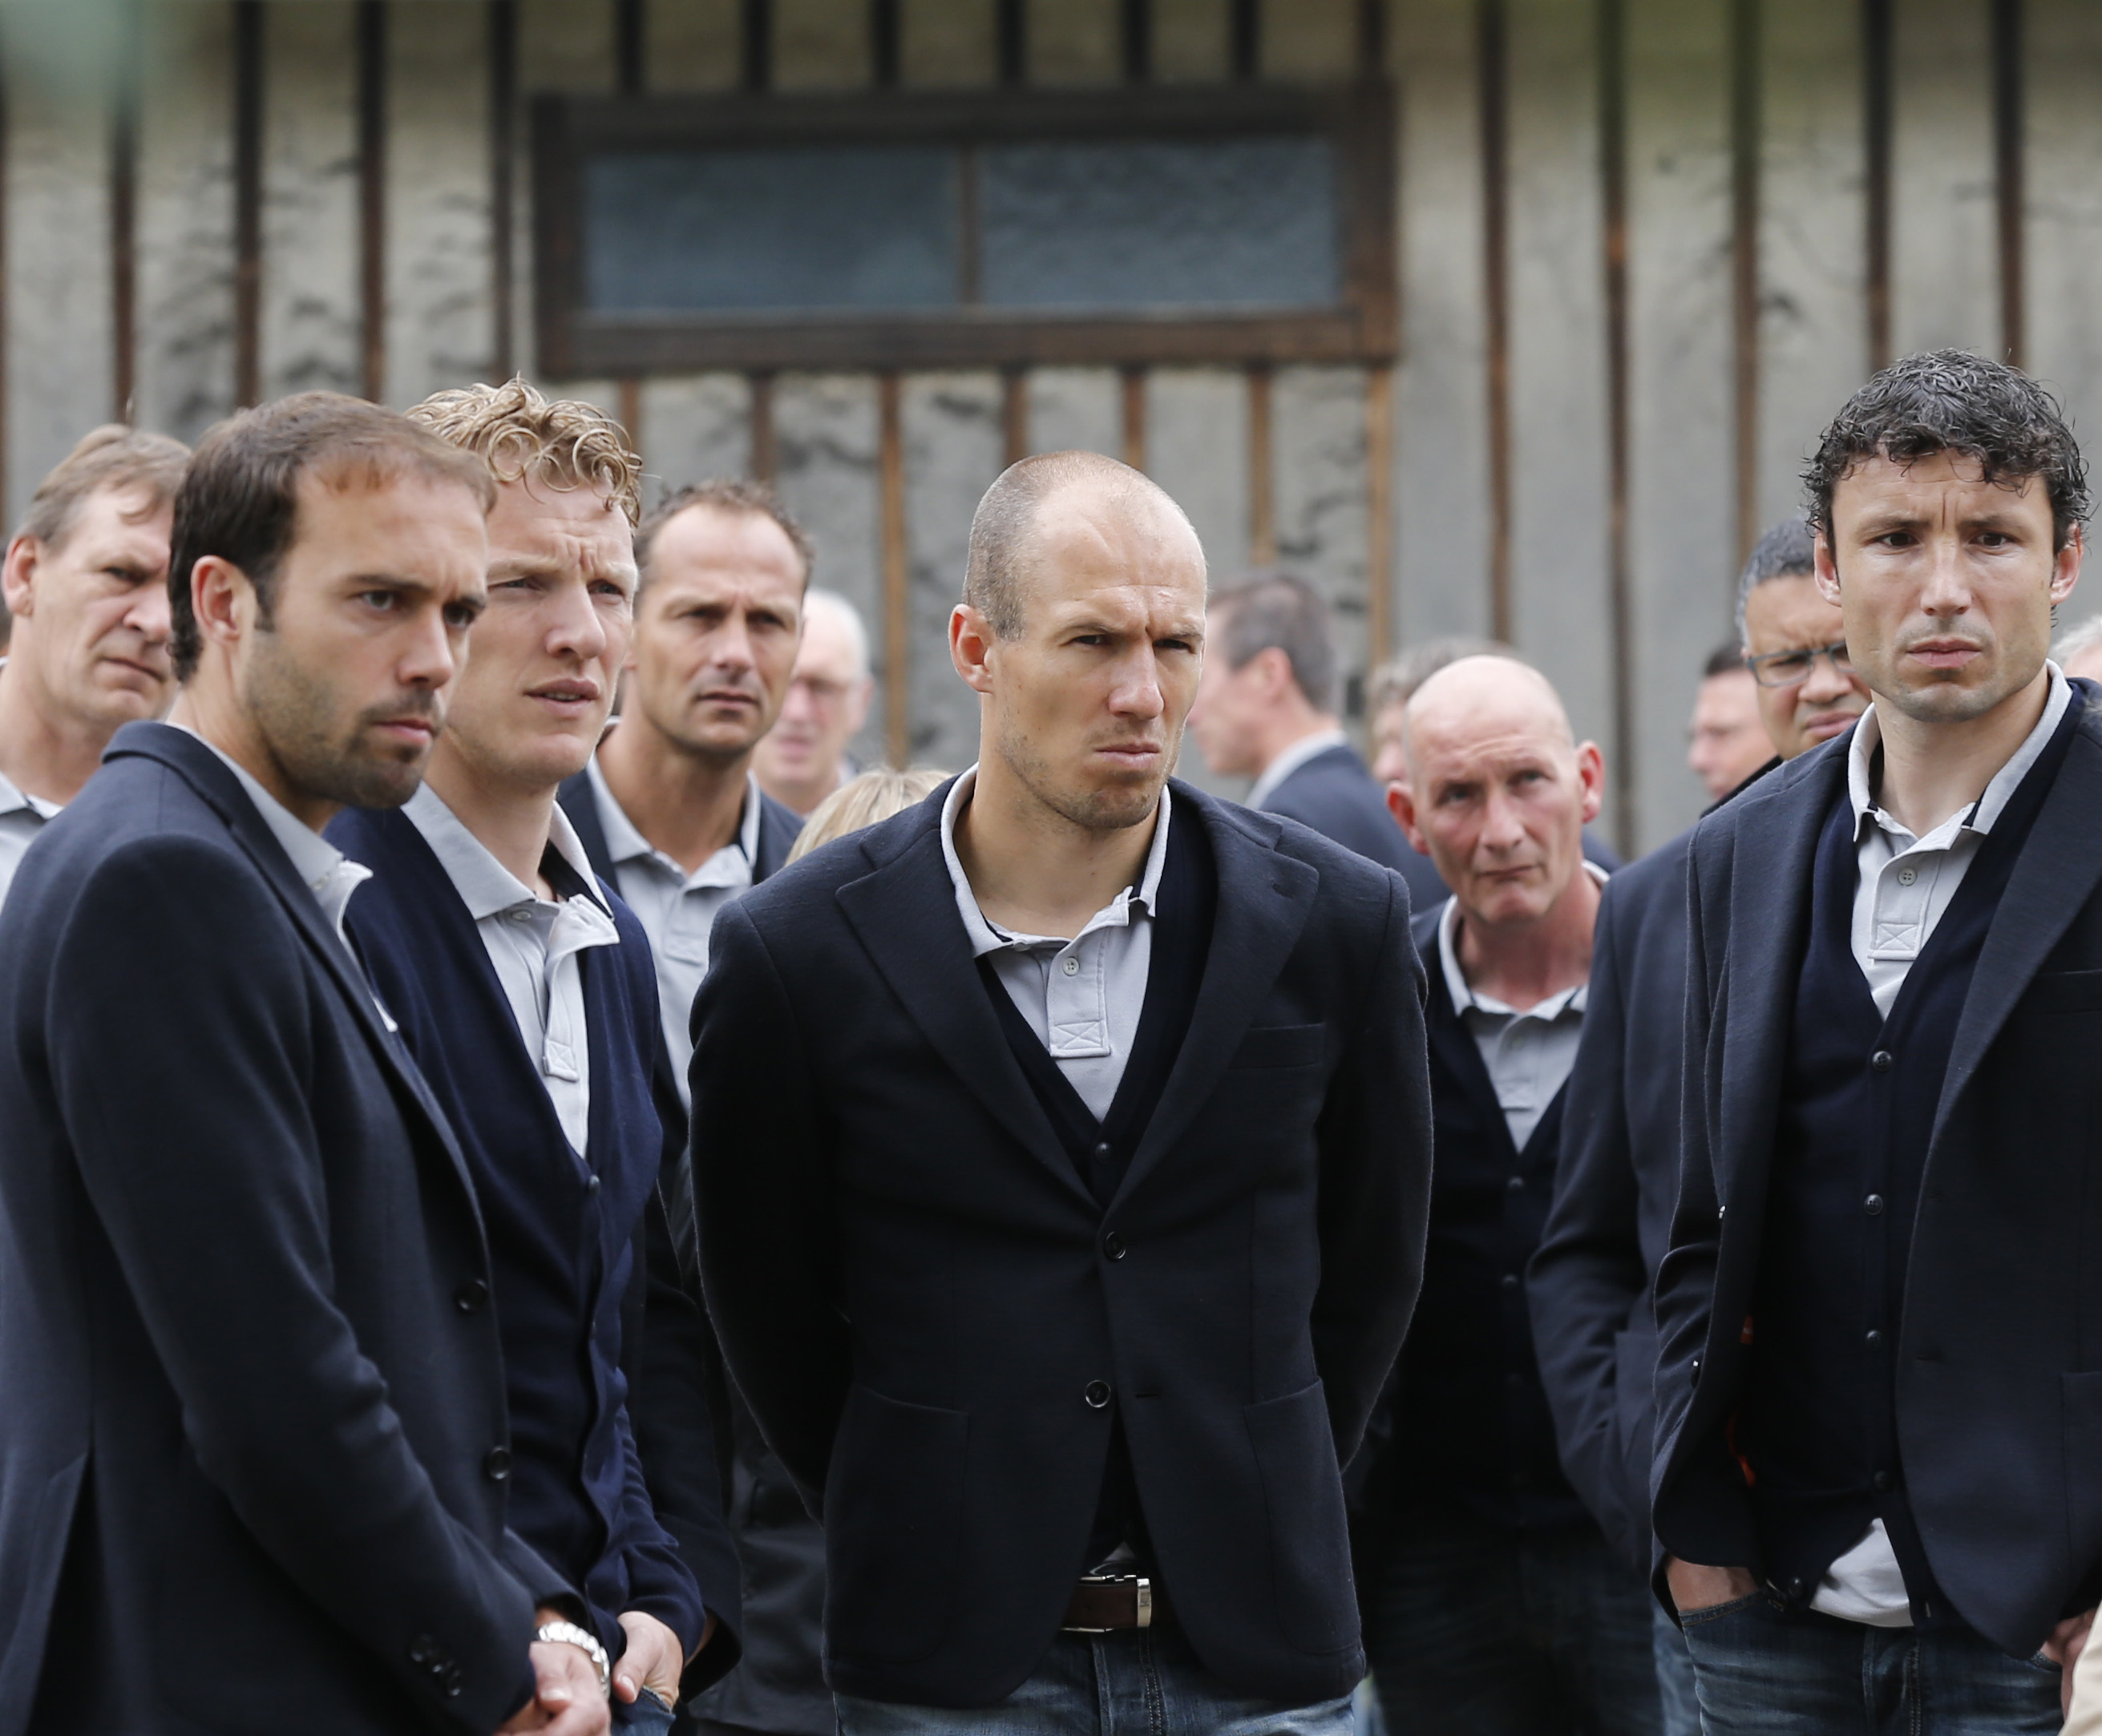 Dirk Kuyt, Arjen Robben, Mark van Bommel och de andra under besöket.